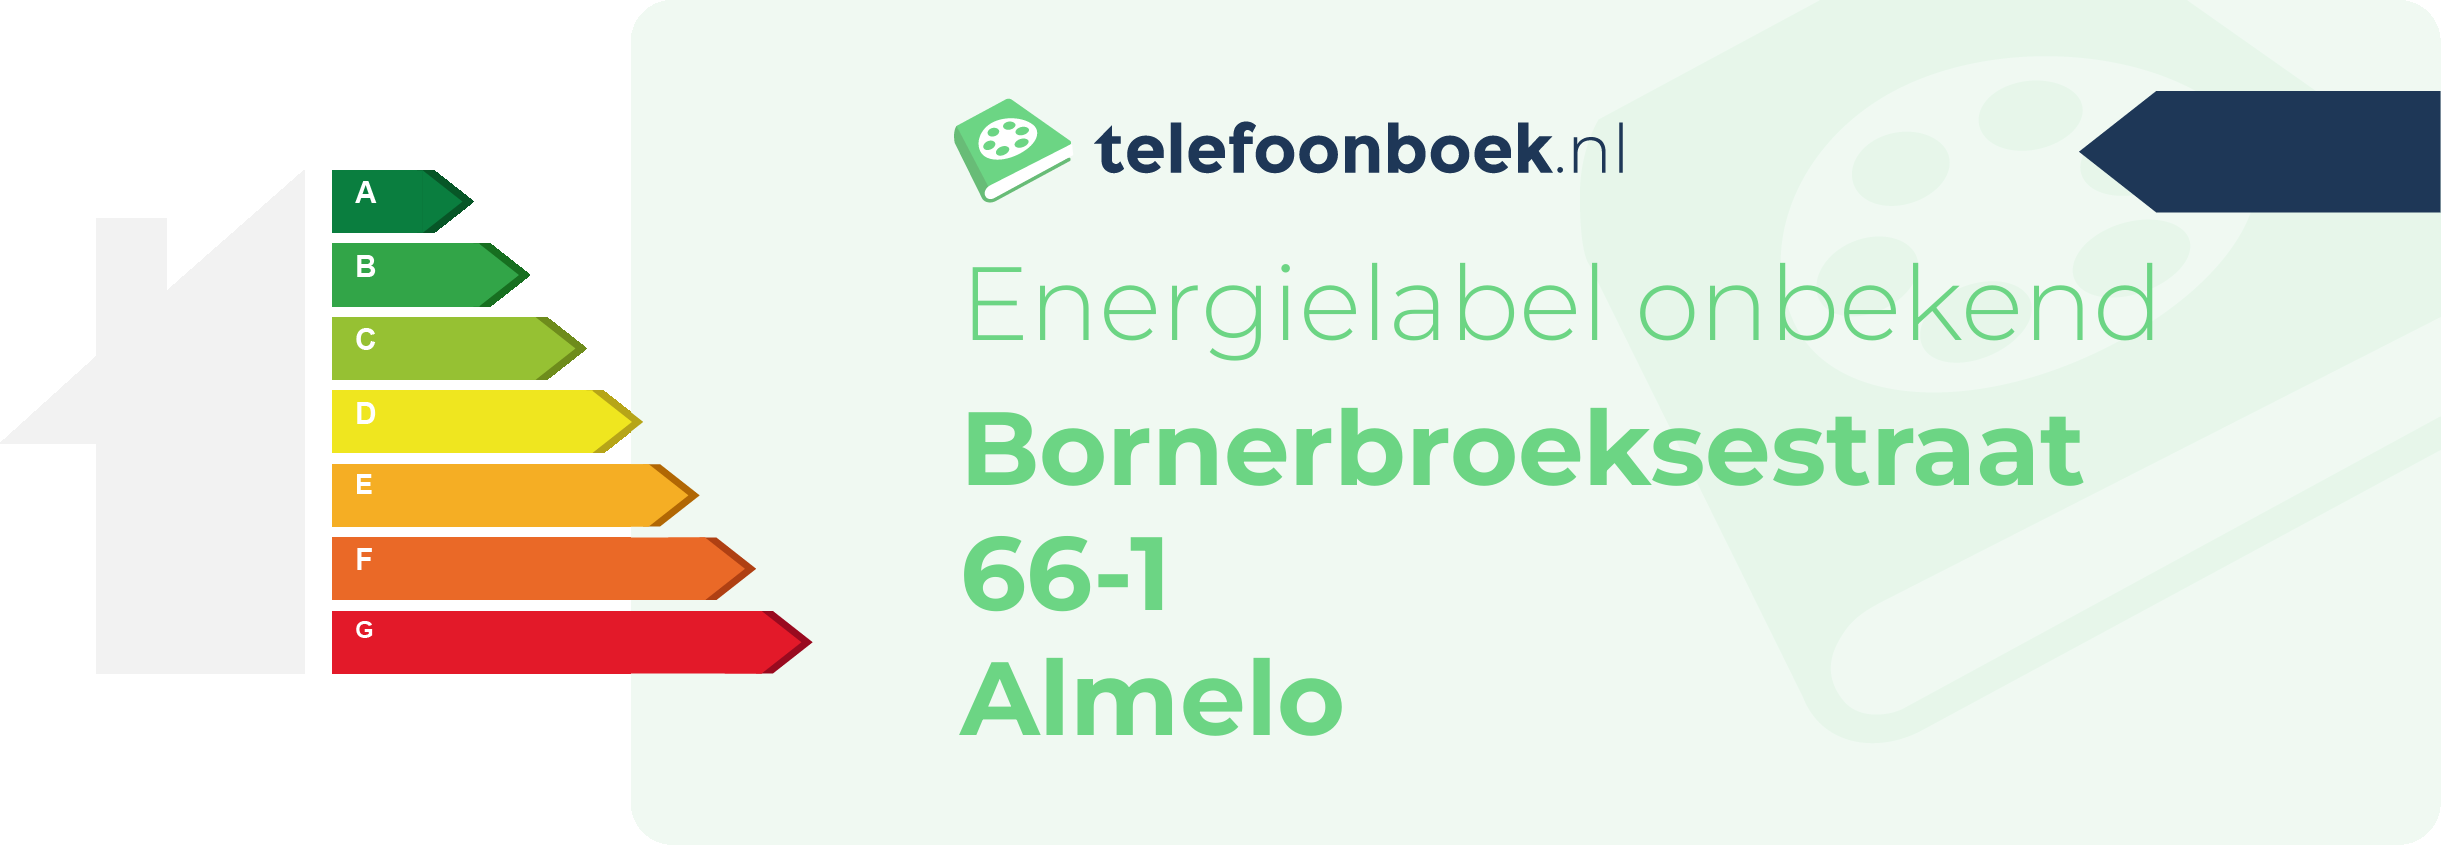 Energielabel Bornerbroeksestraat 66-1 Almelo